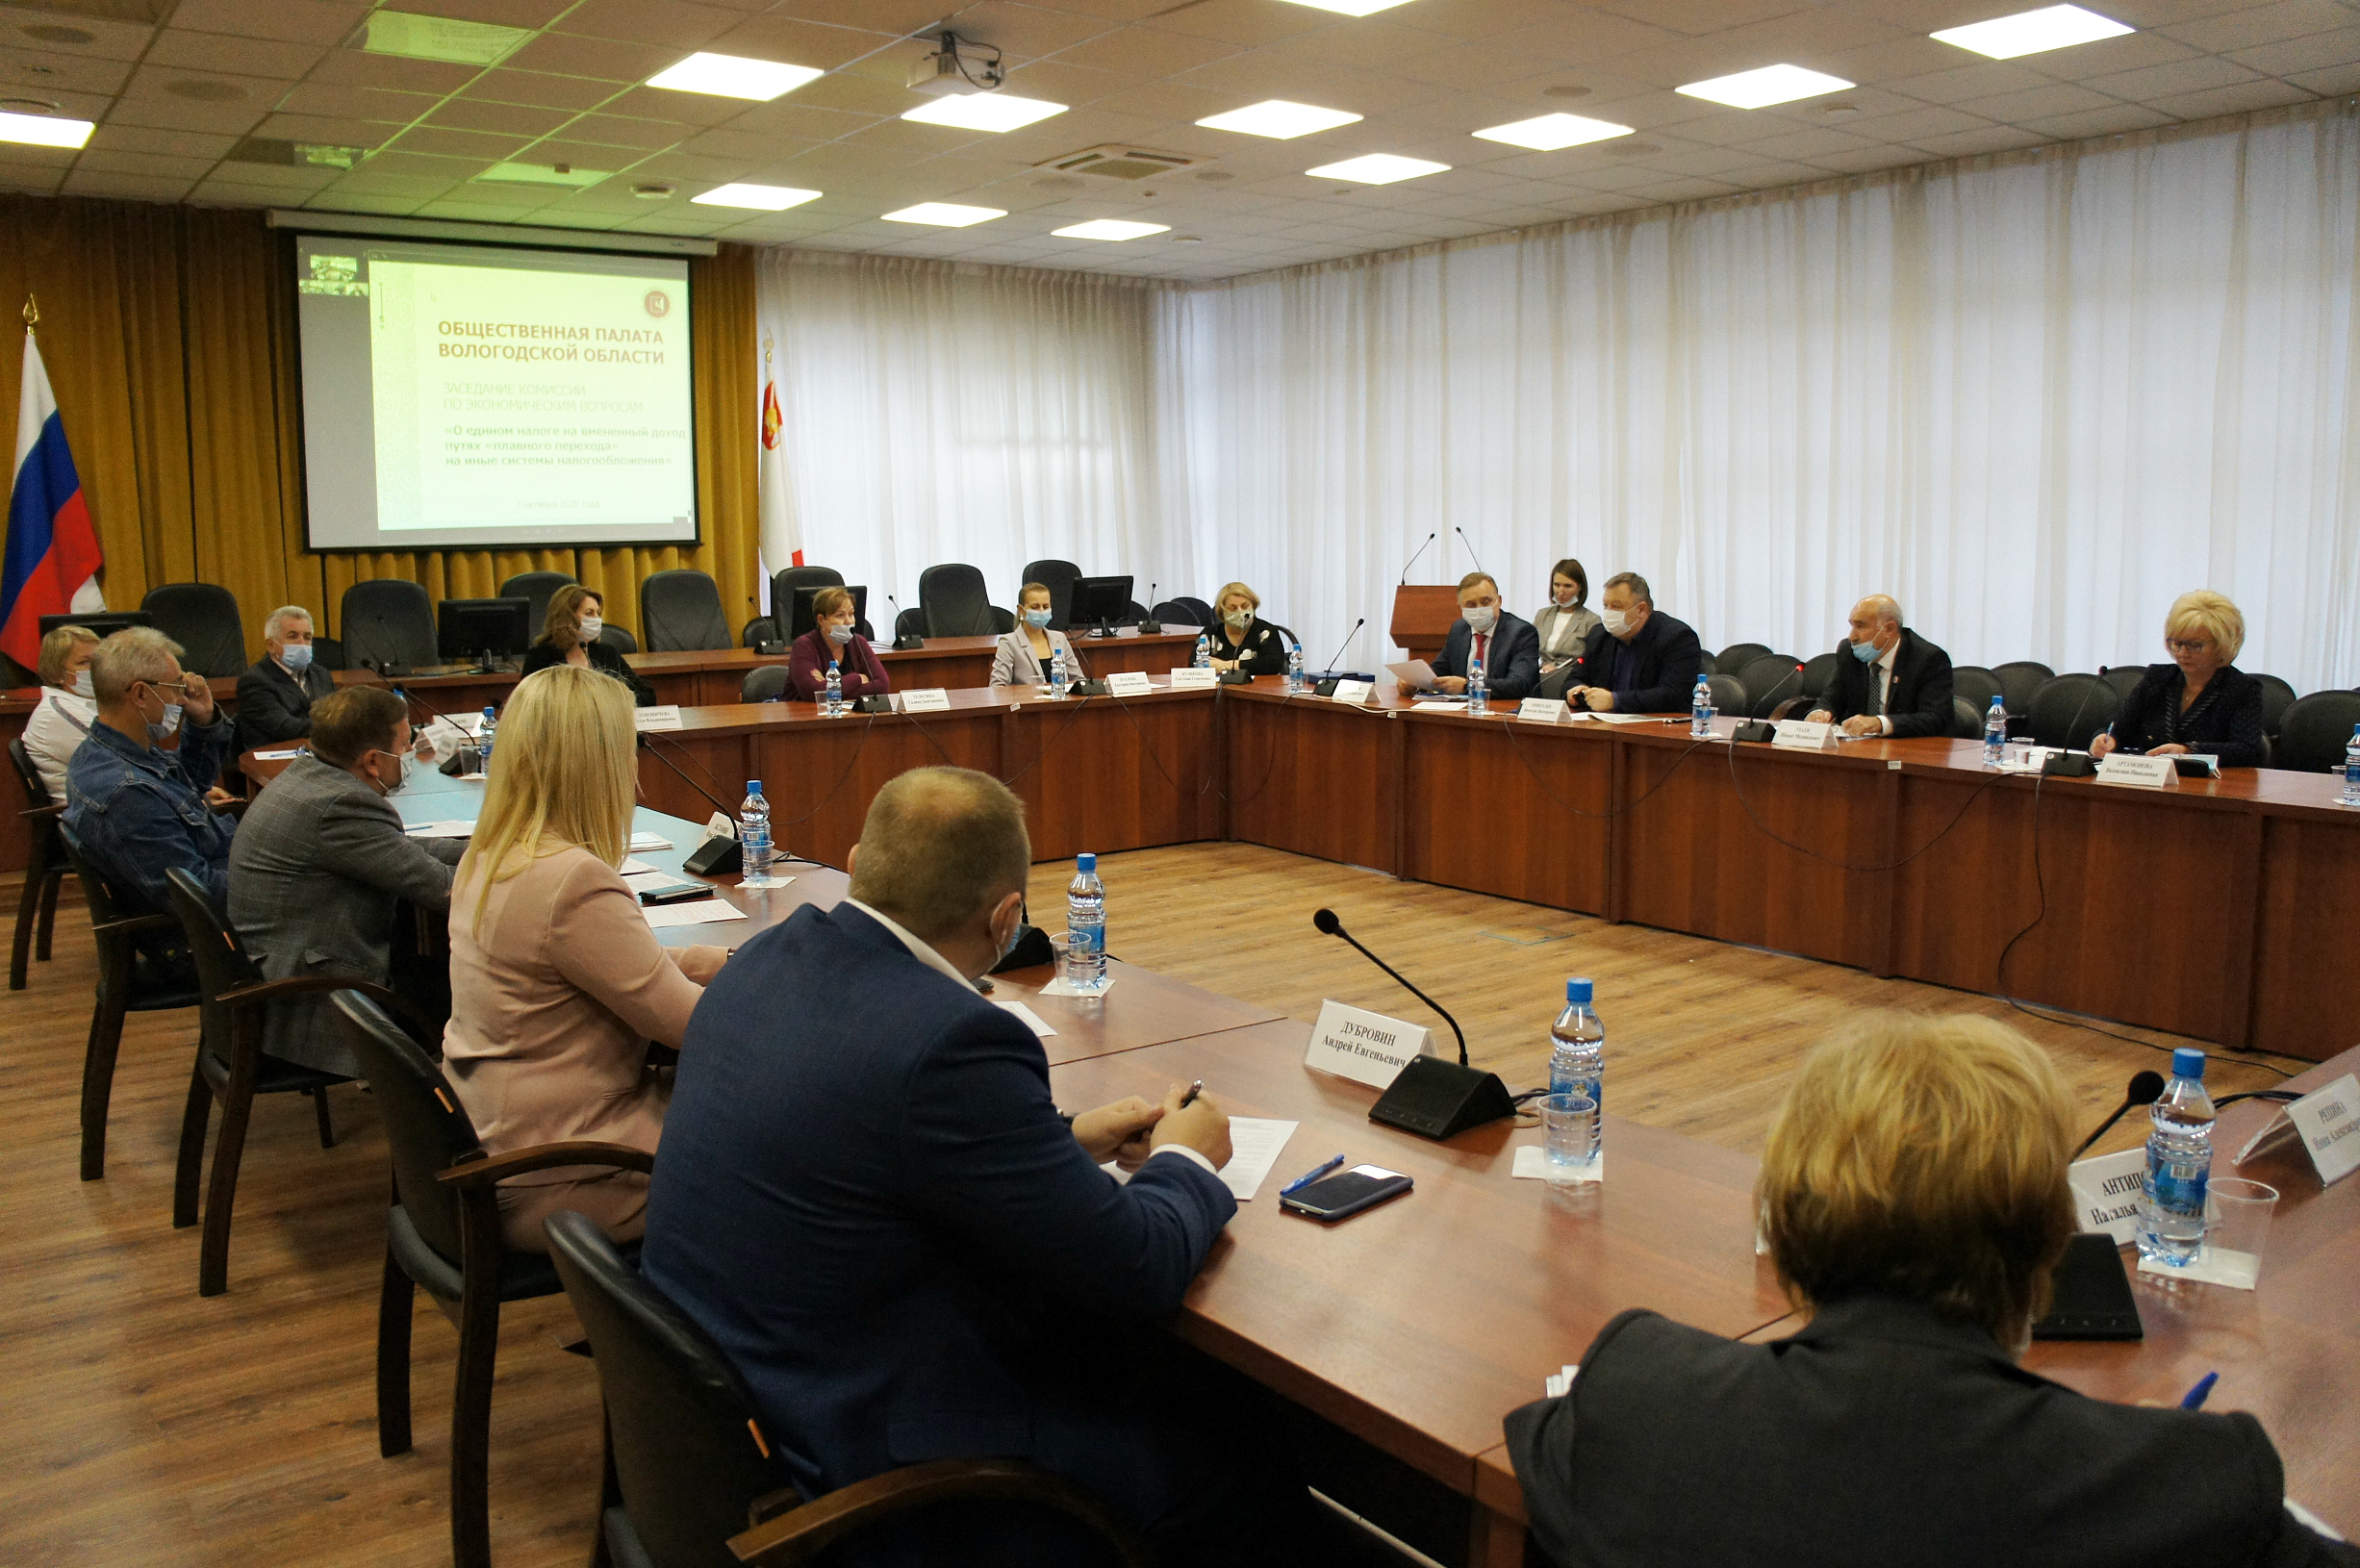 В Общественной палате Вологодской области обсуждали проблему отмены единого налога на вмененный доход и пути «плавного перехода» на иные системы налогообложения